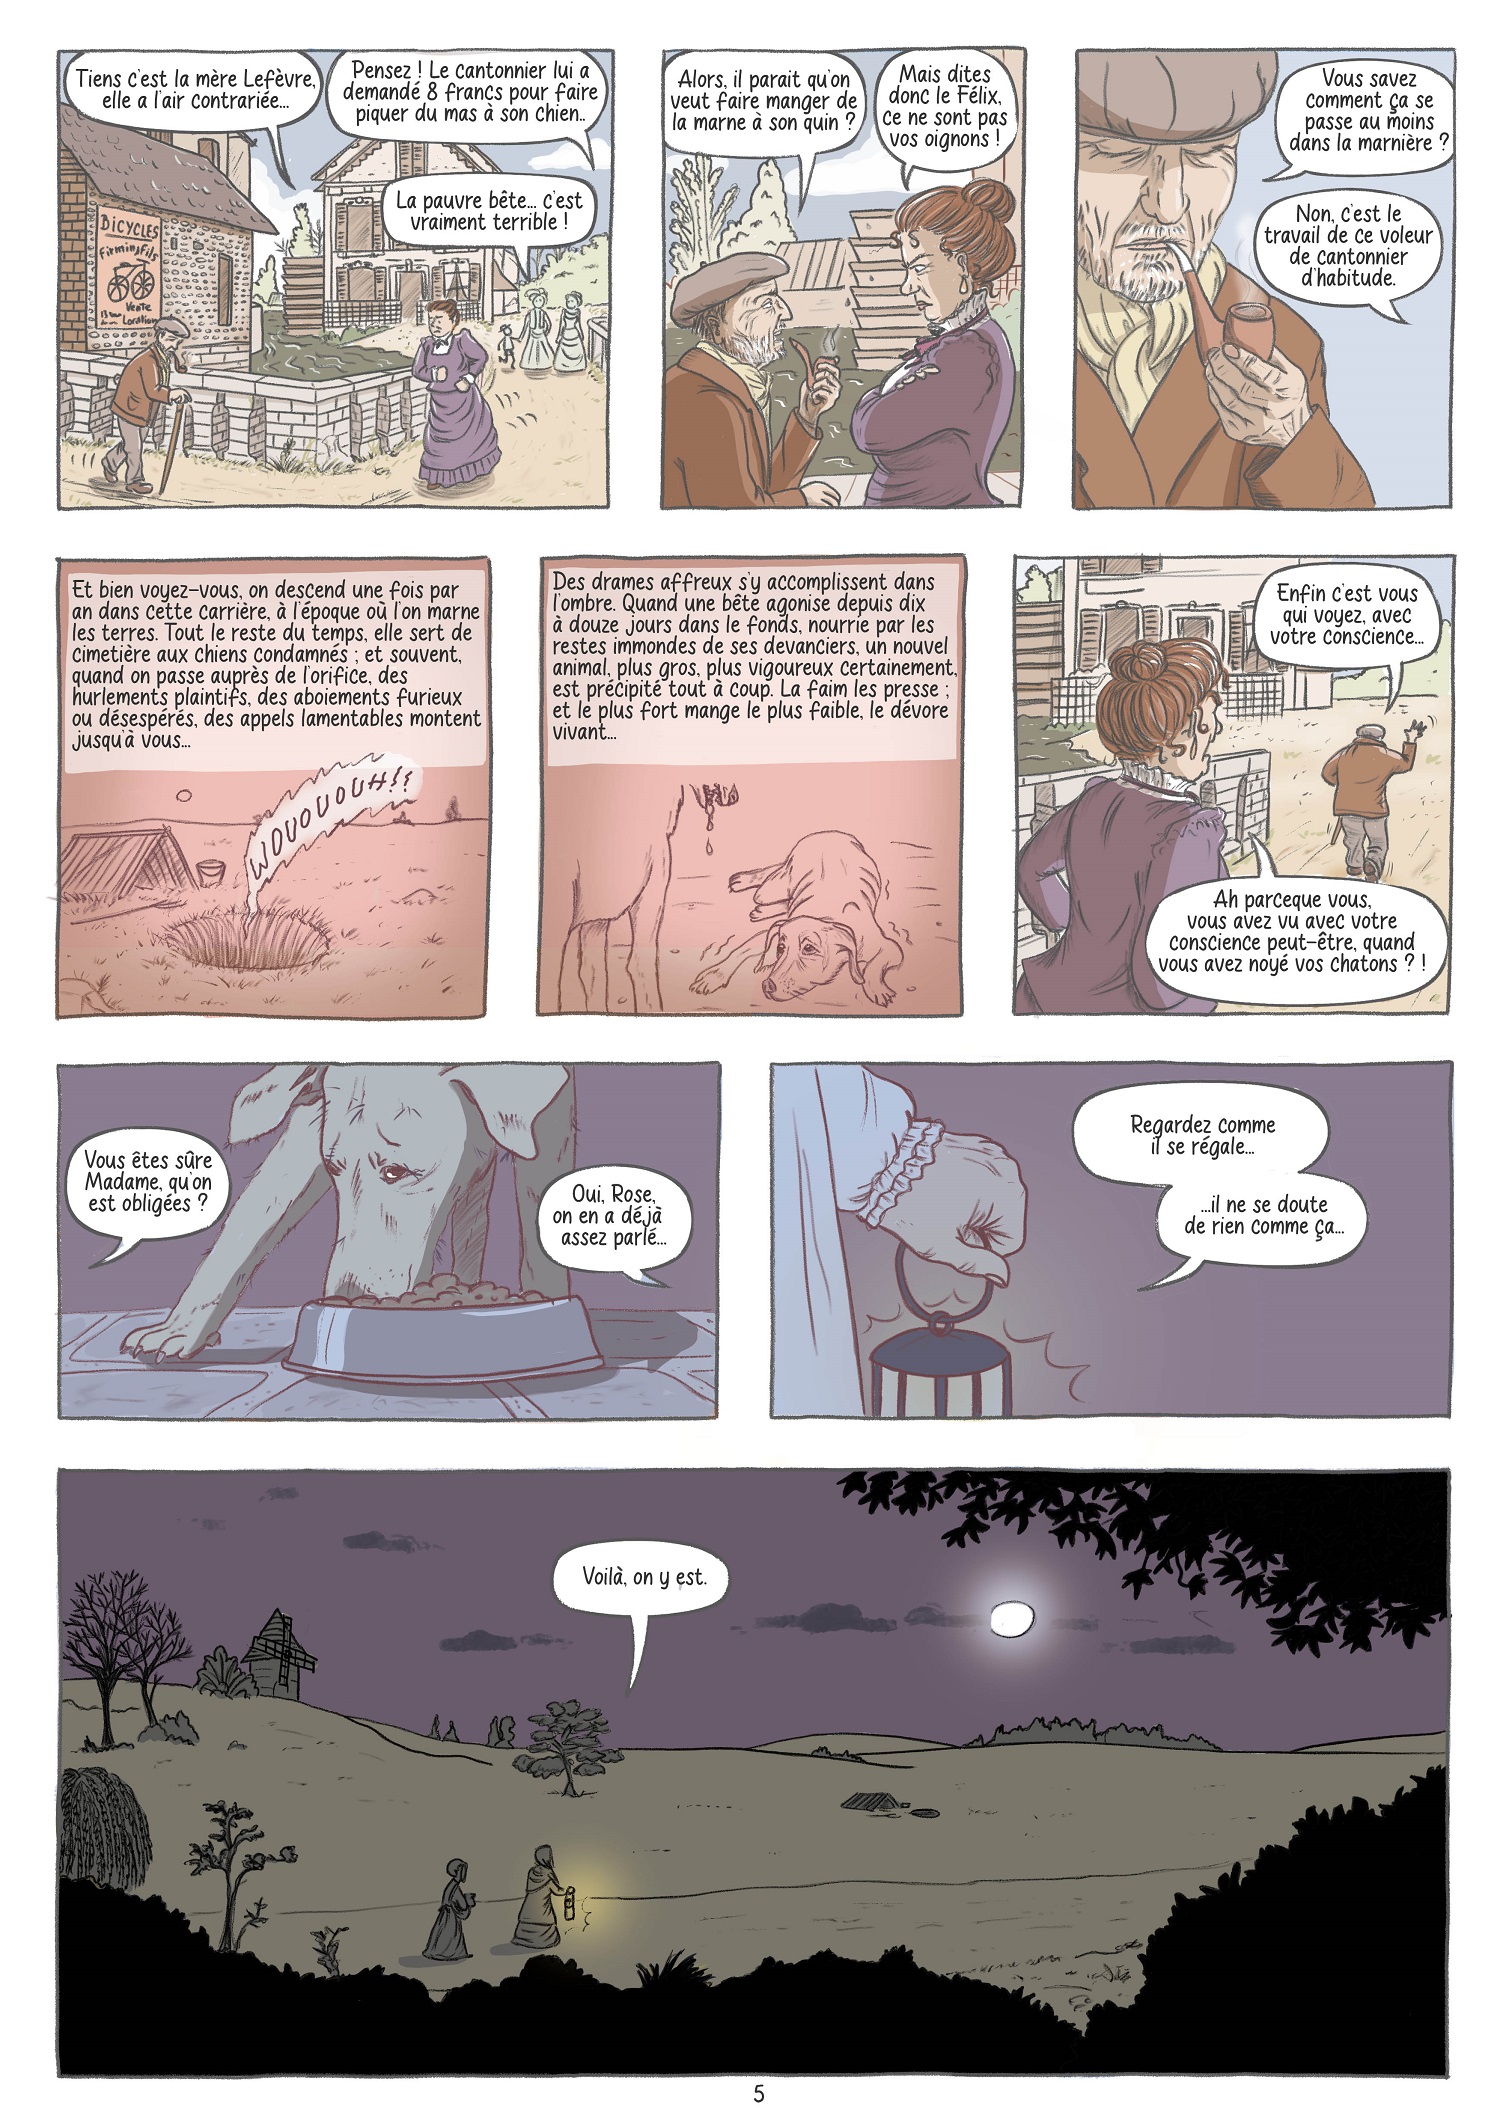 Pierrot Page 5 - Nouvelle de Maupassant